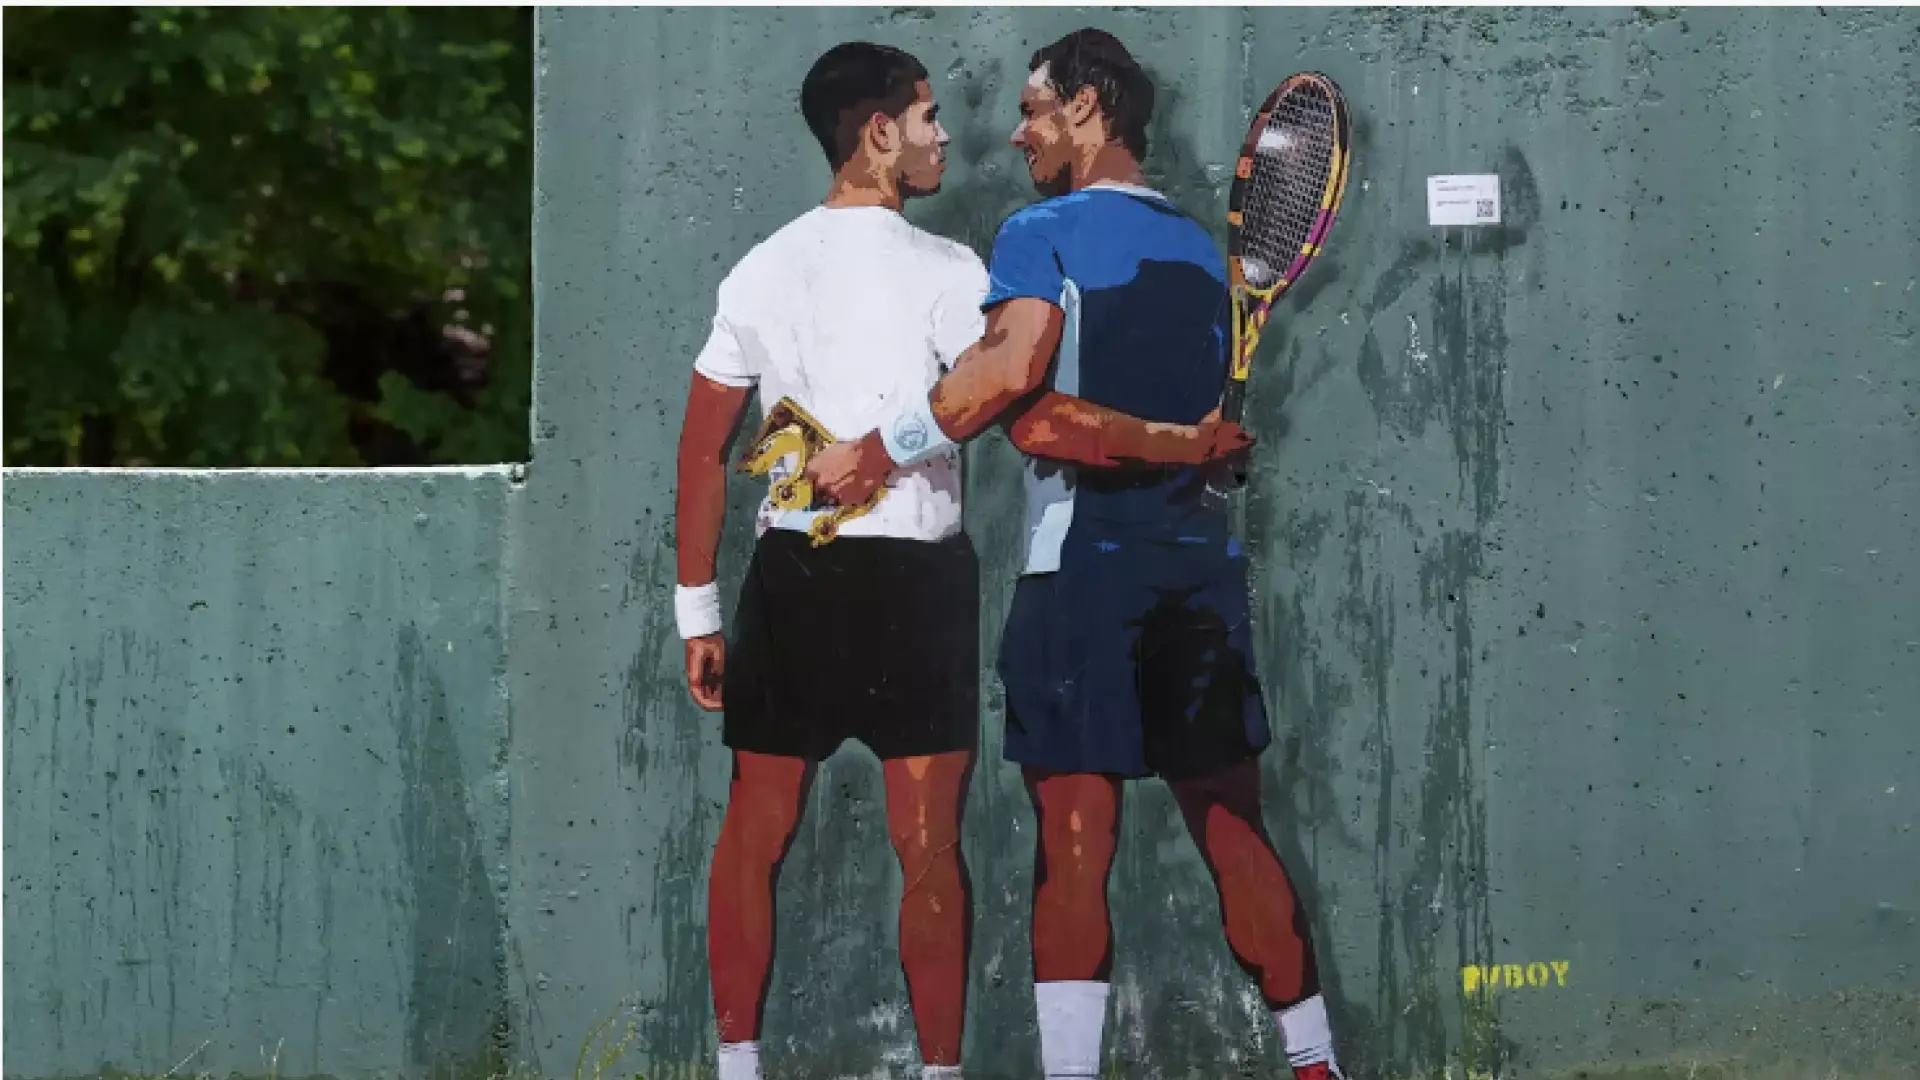 El emotivo mensaje detrás del mural de Rafa Nadal y Carlos Alcaraz en el Mutua Madrid Open